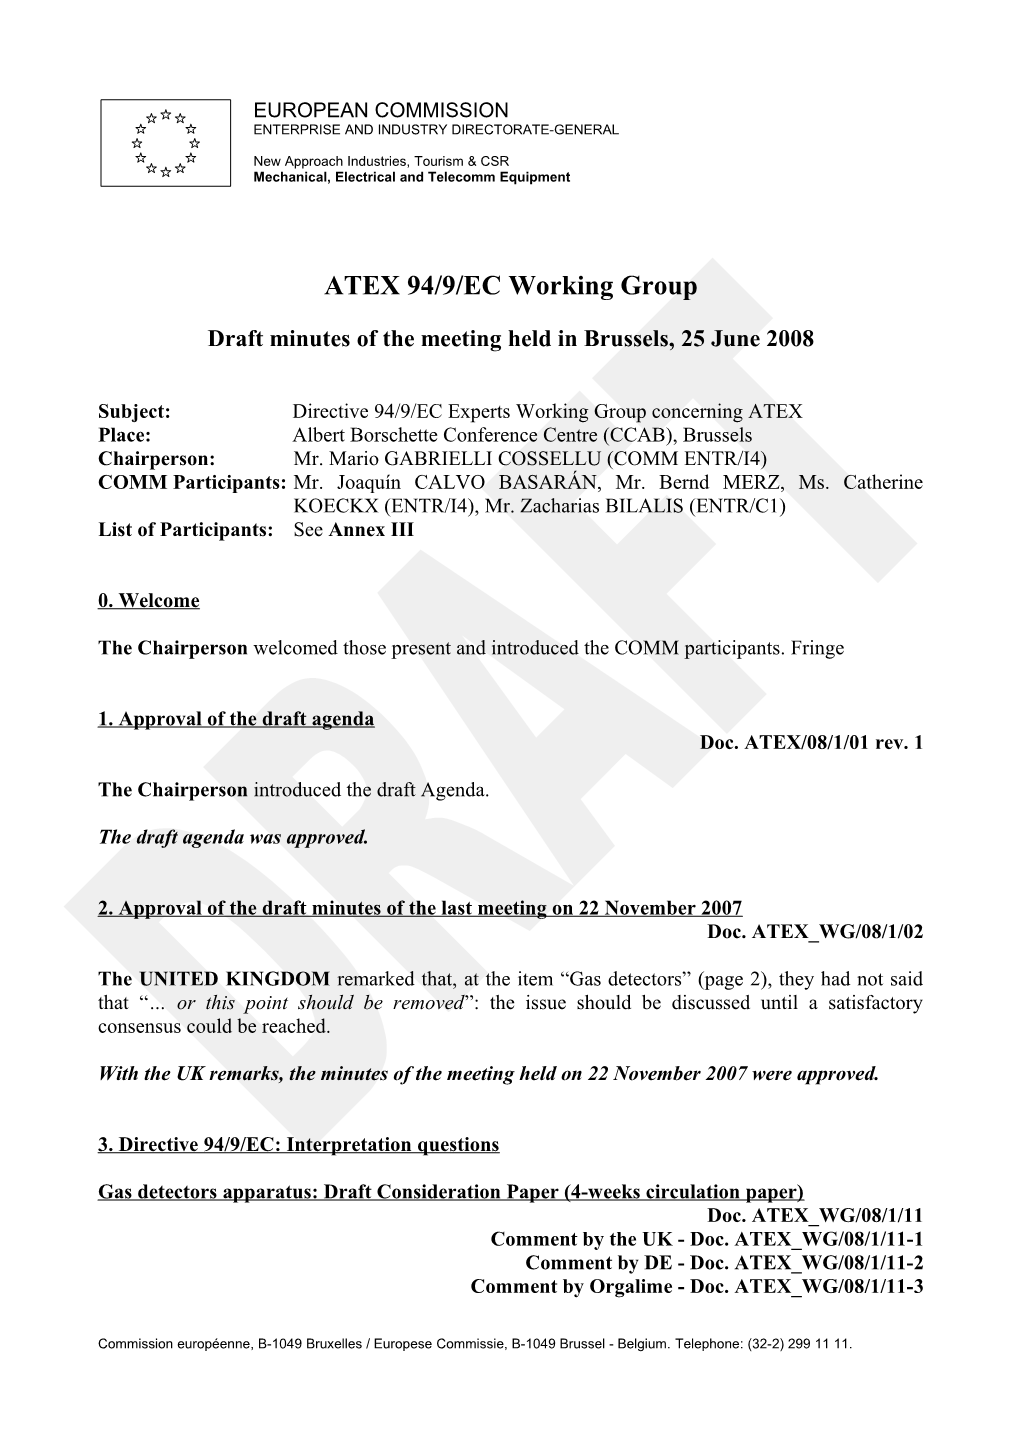 Draft Minutes ATEX WG Meeting 2008-06-25